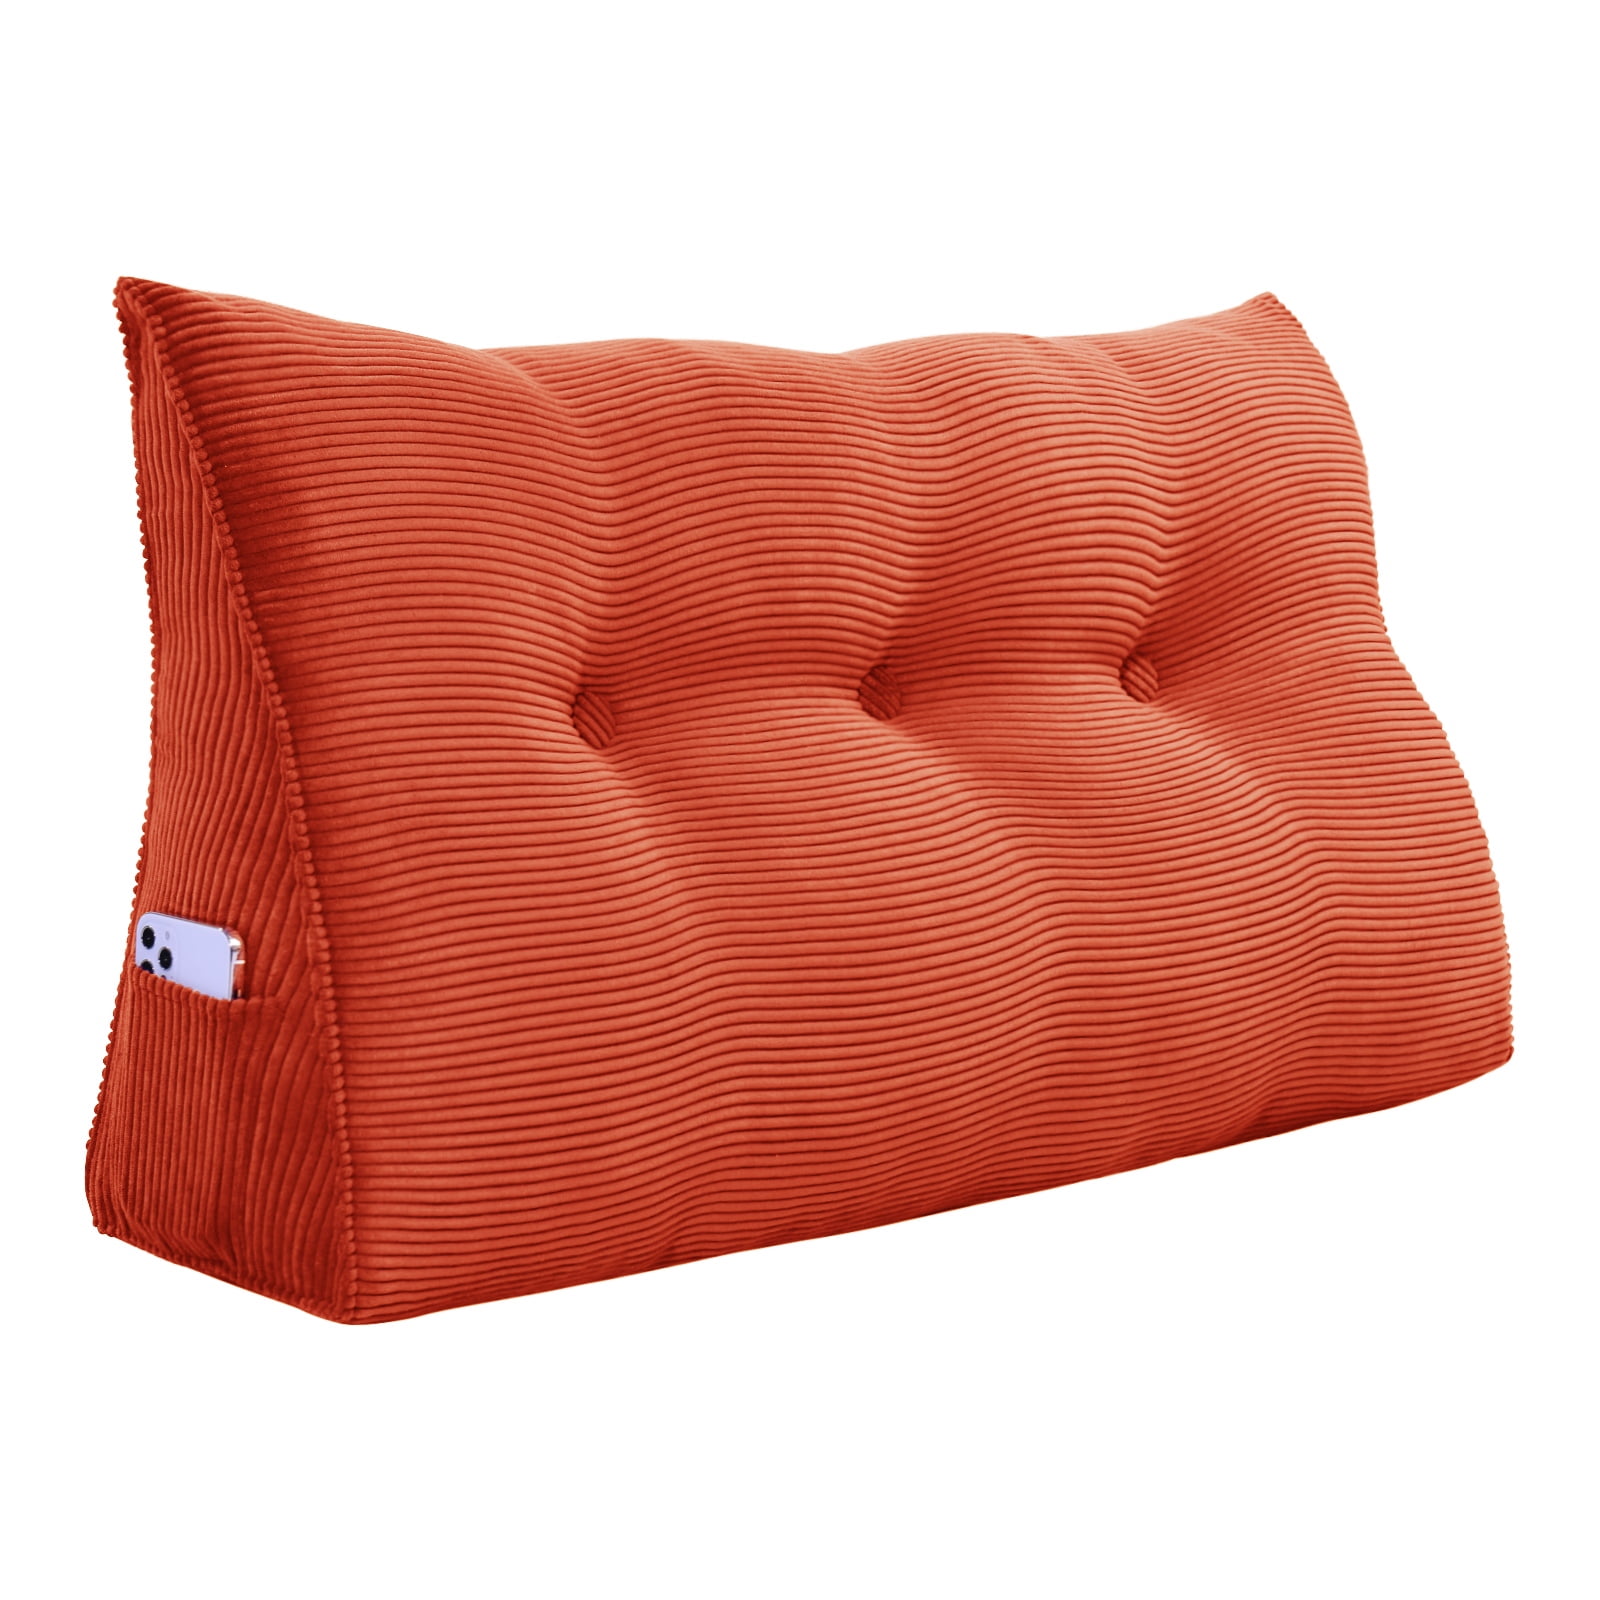 Triangular Backrest Cushion Cotton Linen Sofa Bed Rest Back Pillow Waist Cushion 